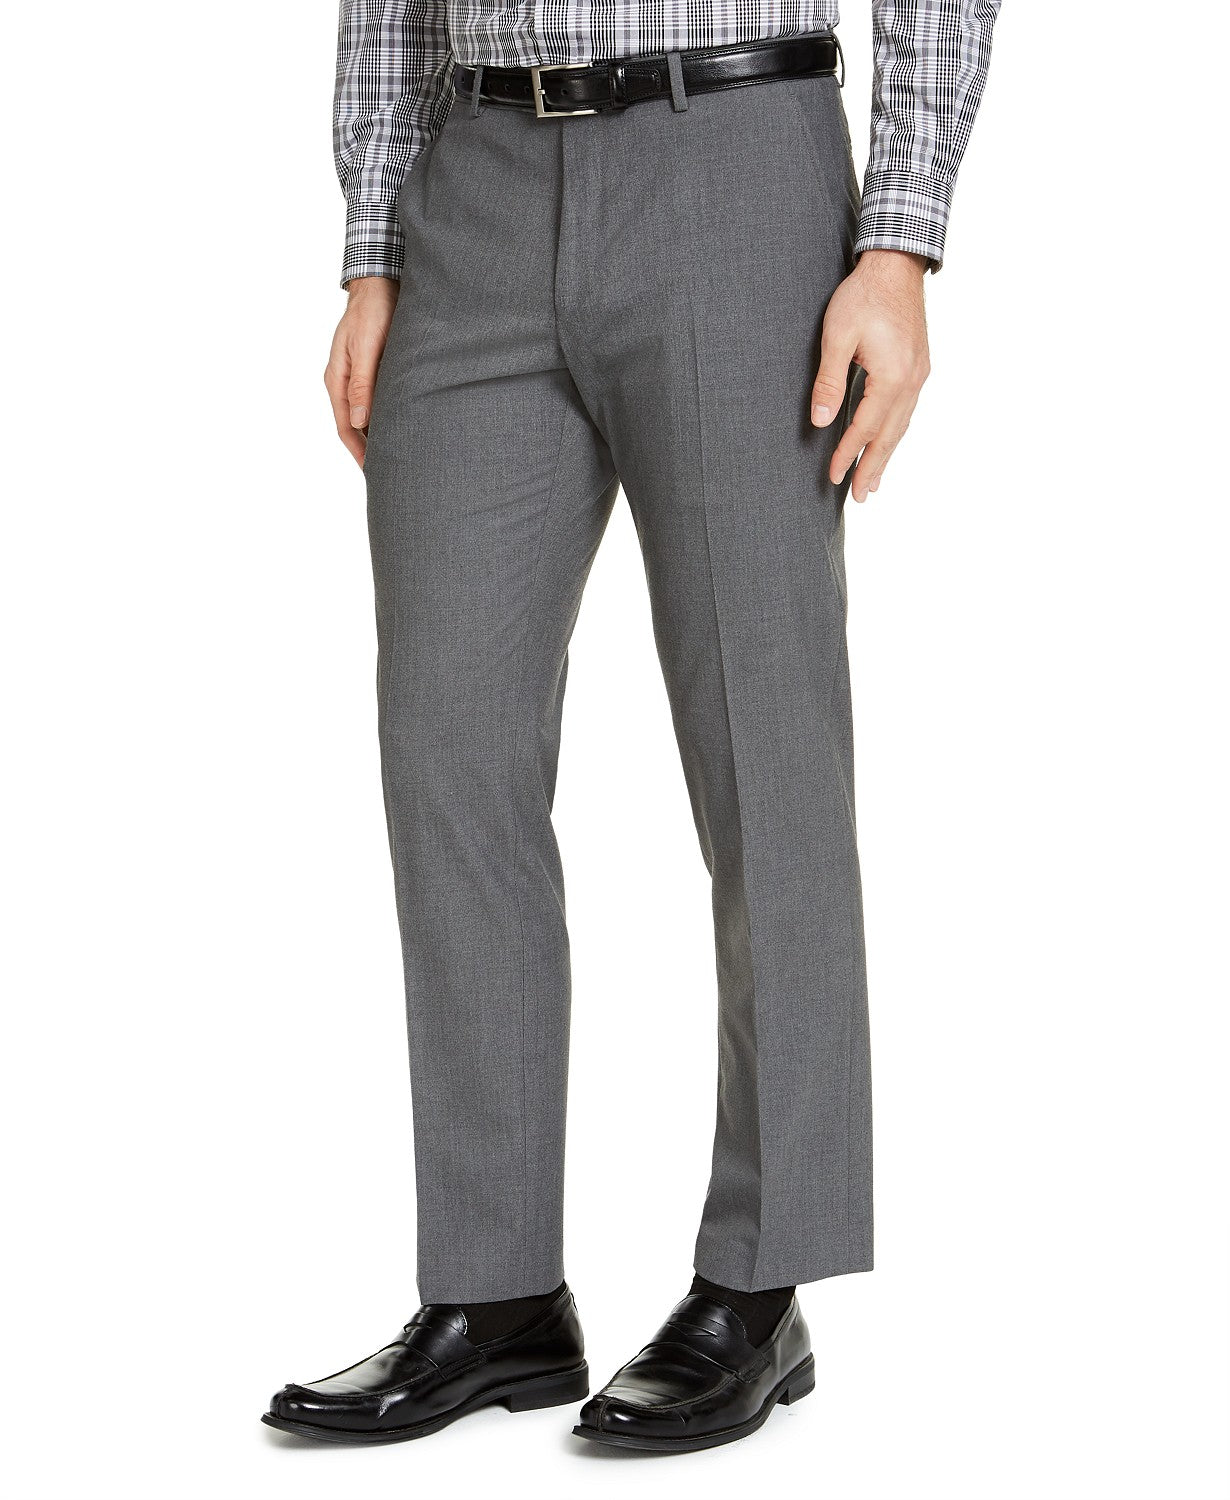 IZOD Men's Classic-Fit Suit Pants Grey Solid 34 x 30 Flat Front Pant